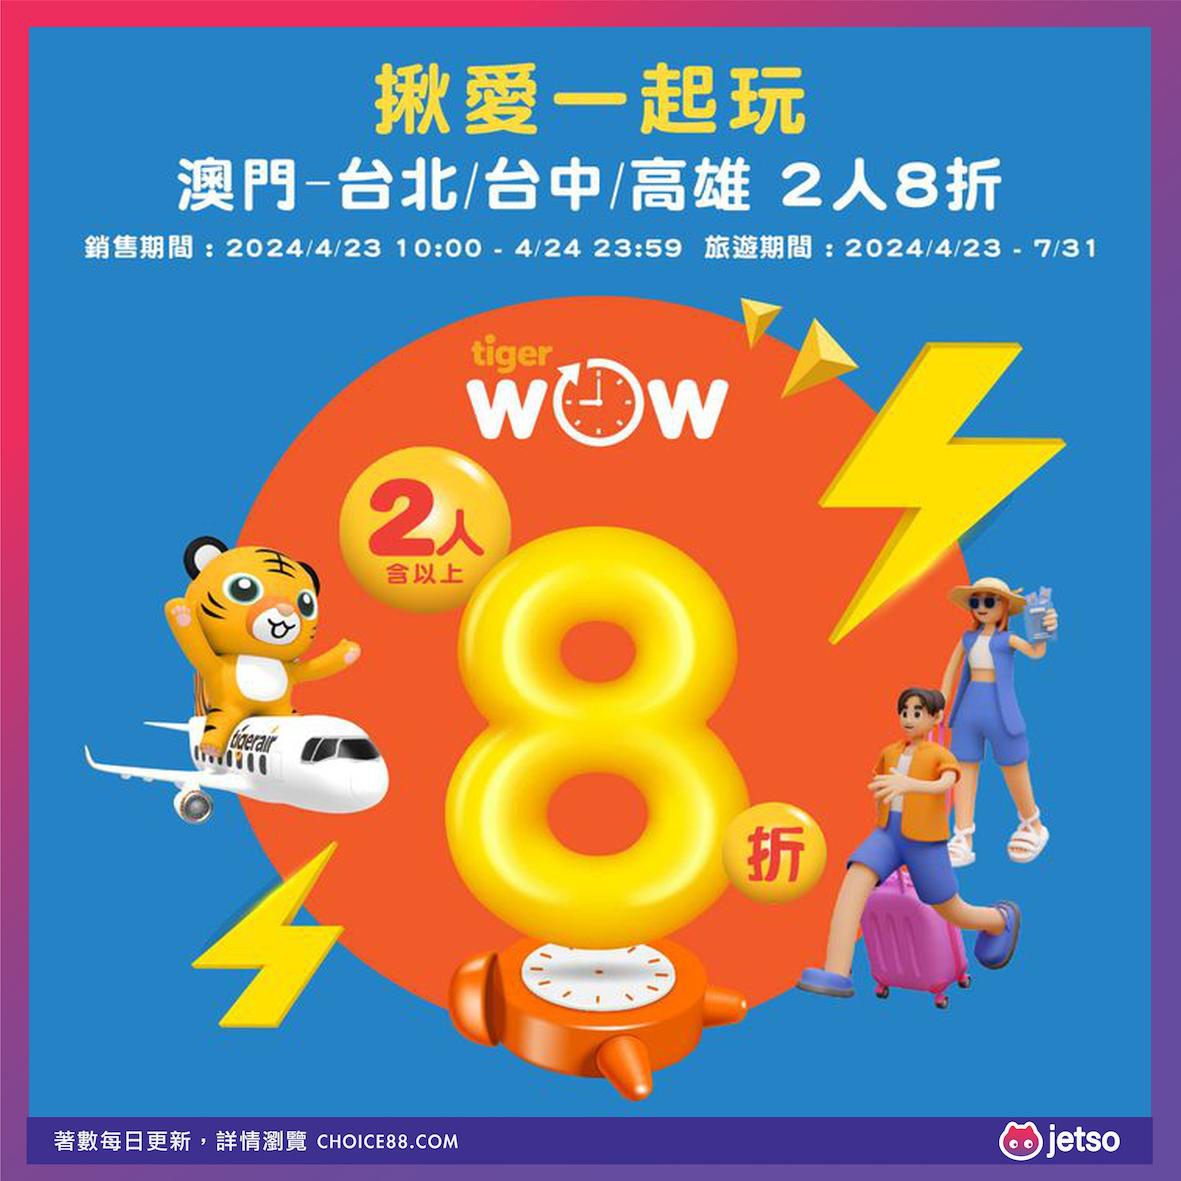 台灣虎航 : [機票優惠]台北、台中、高雄8折旅遊優惠